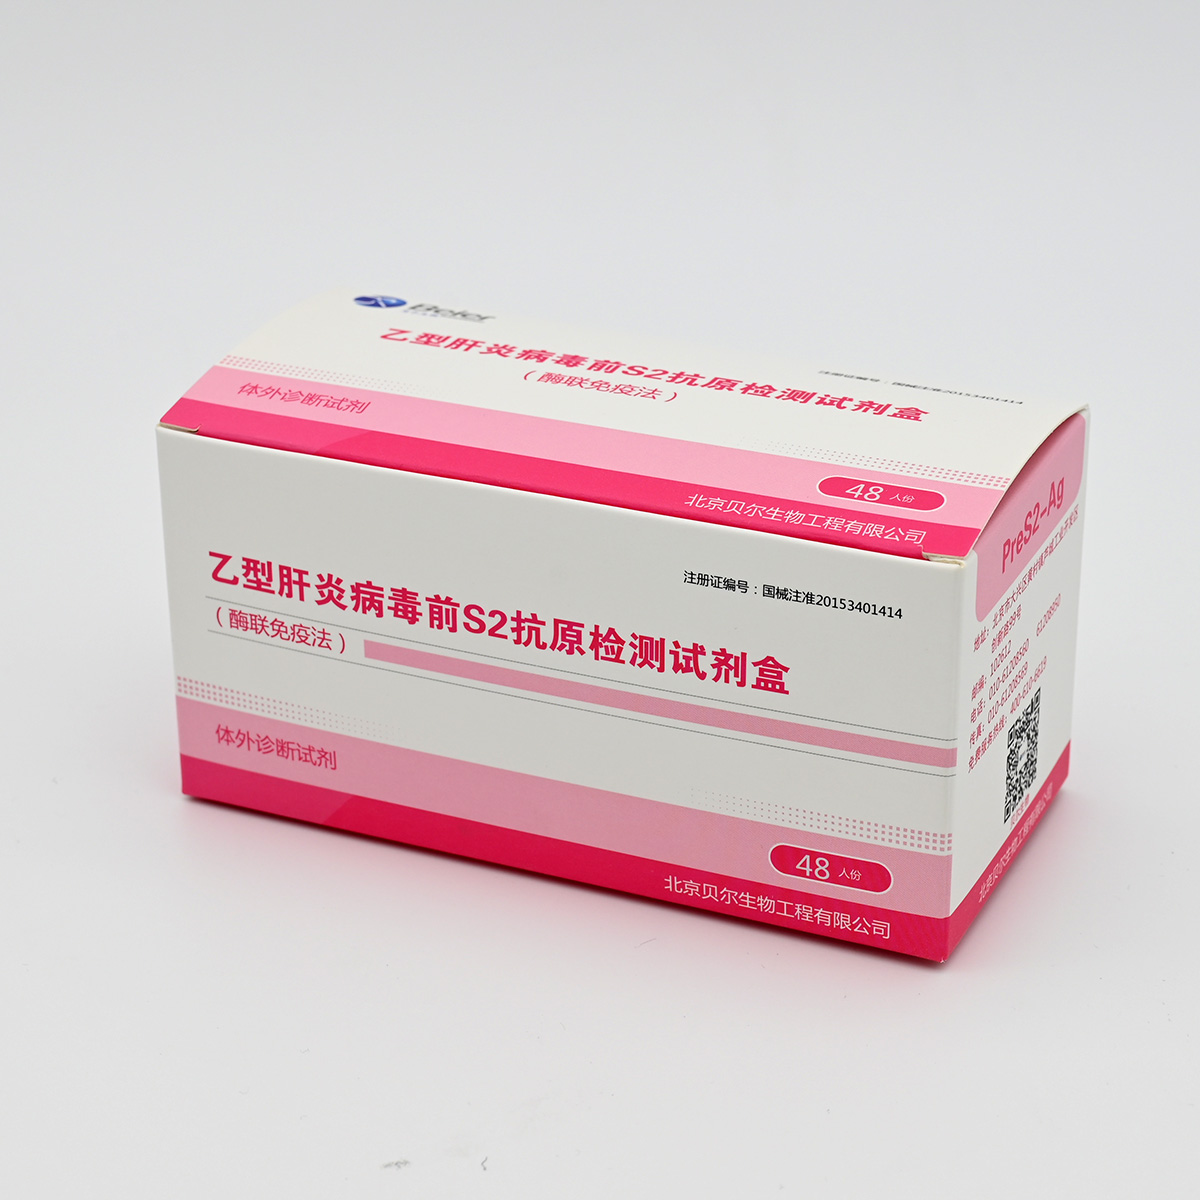 【贝尔】乙型肝炎病毒前S2抗原检测试剂盒(酶联免疫法)